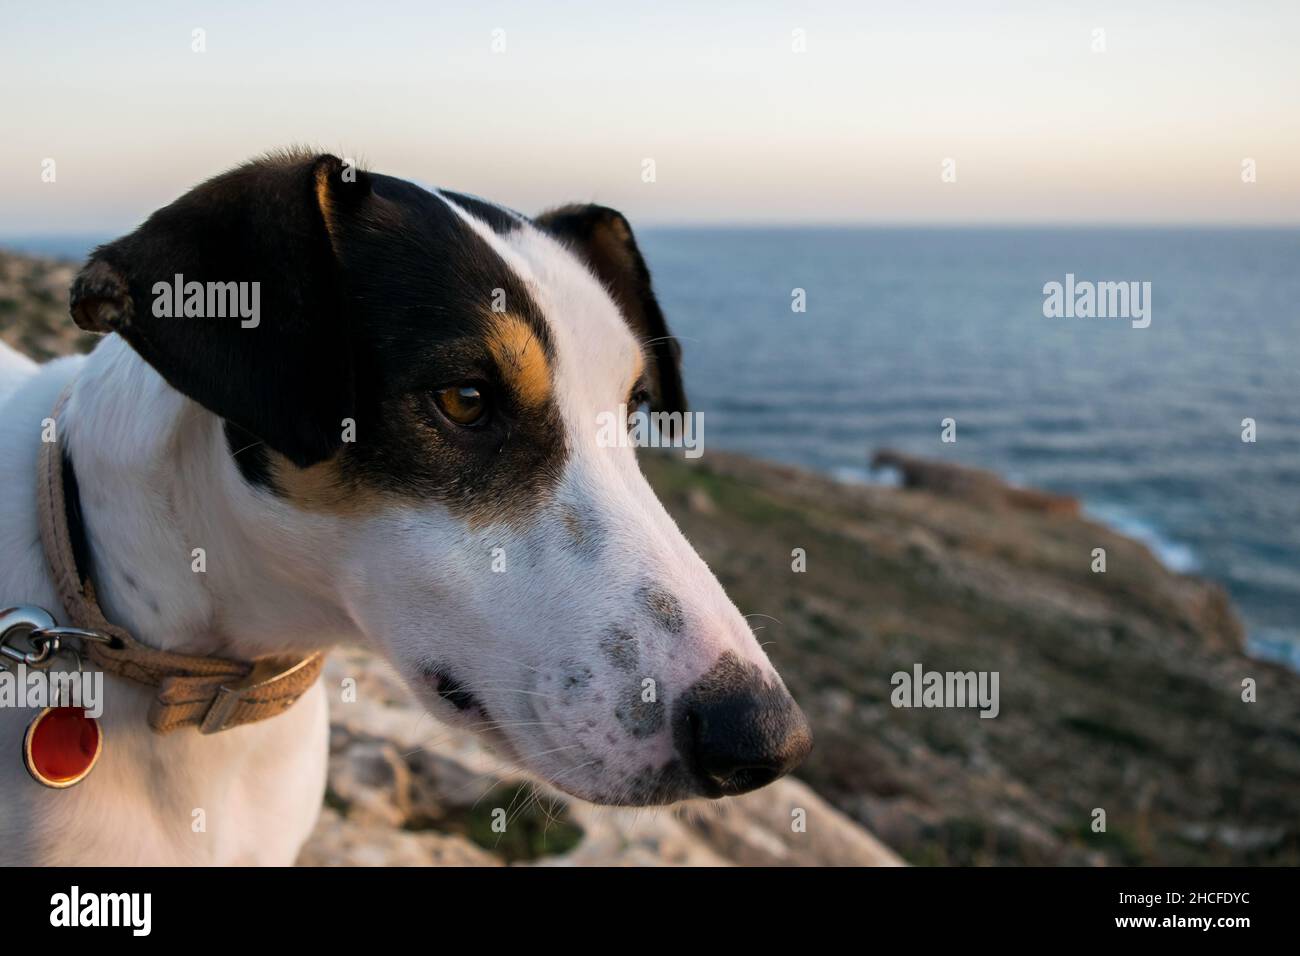 Gros plan du visage d'un chien de race de terrier et de croisement avec pointeur, avec œil de noisette Banque D'Images